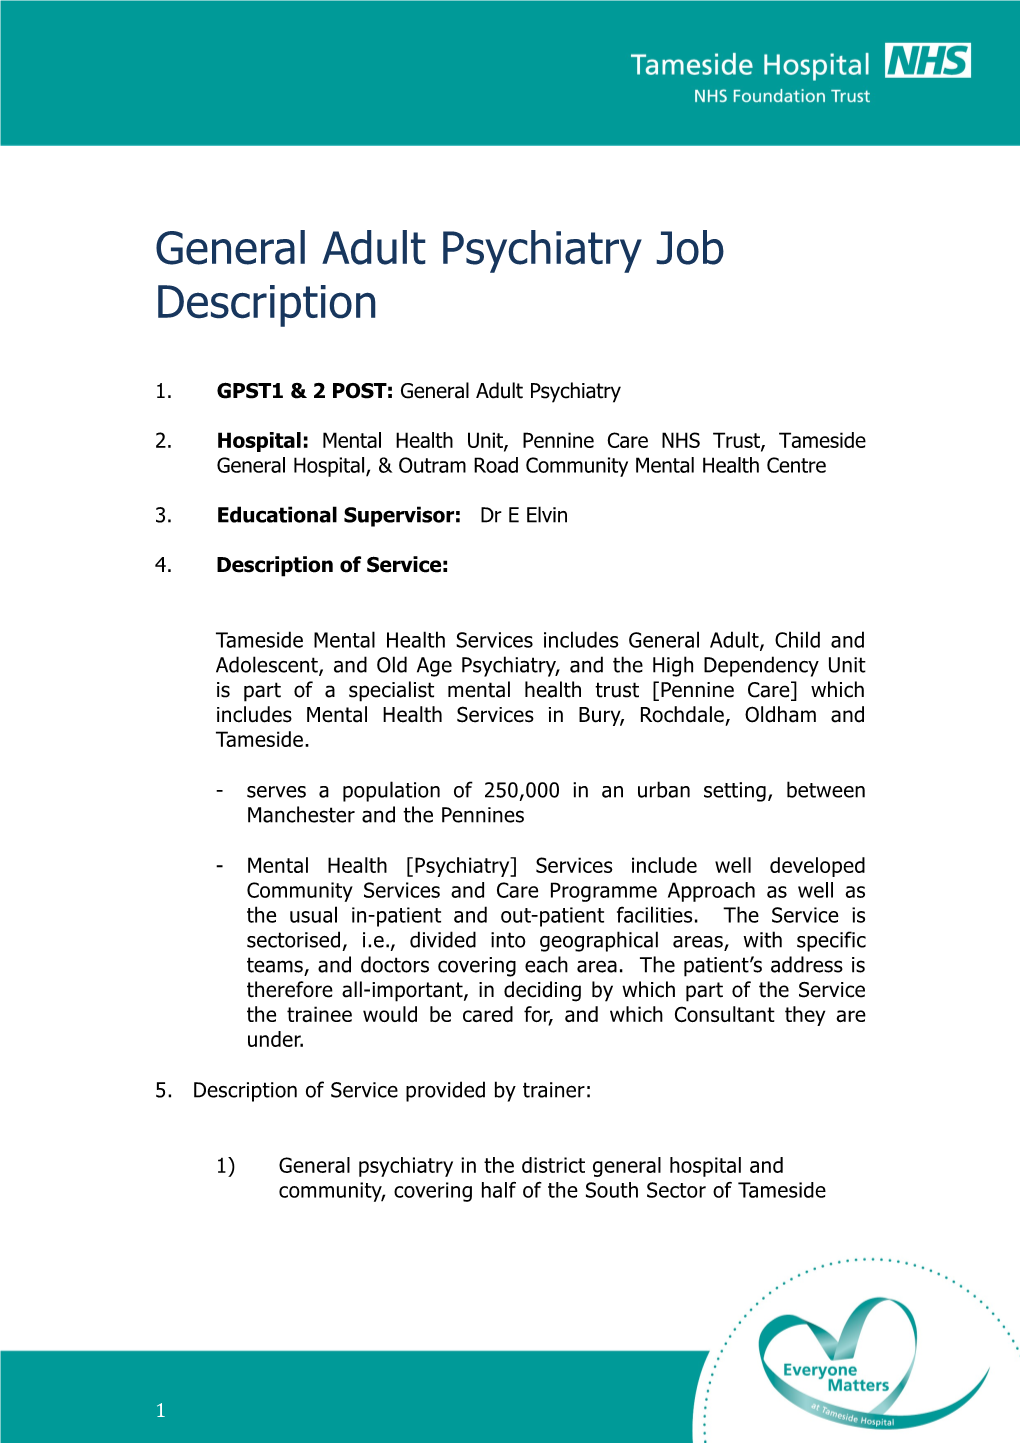 General Adult Psychiatry Job Description